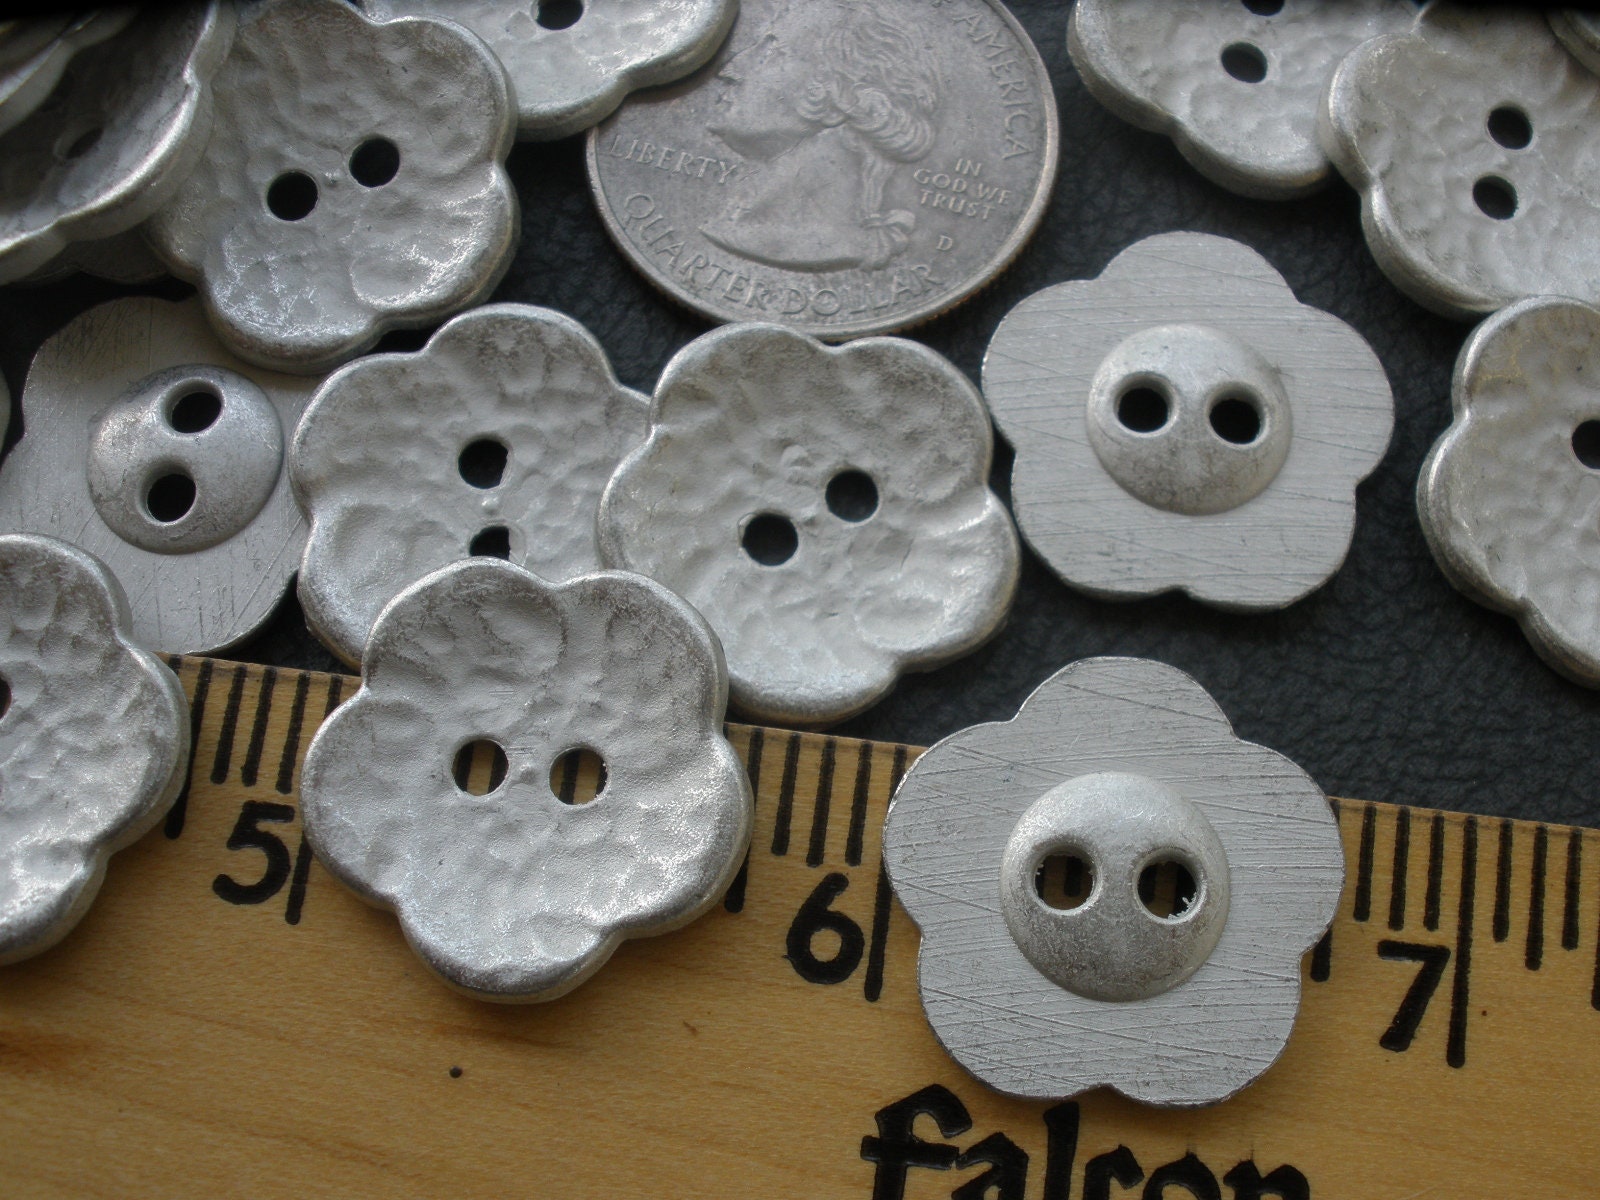 Flower buttons white matt finish 26mm a set of 6